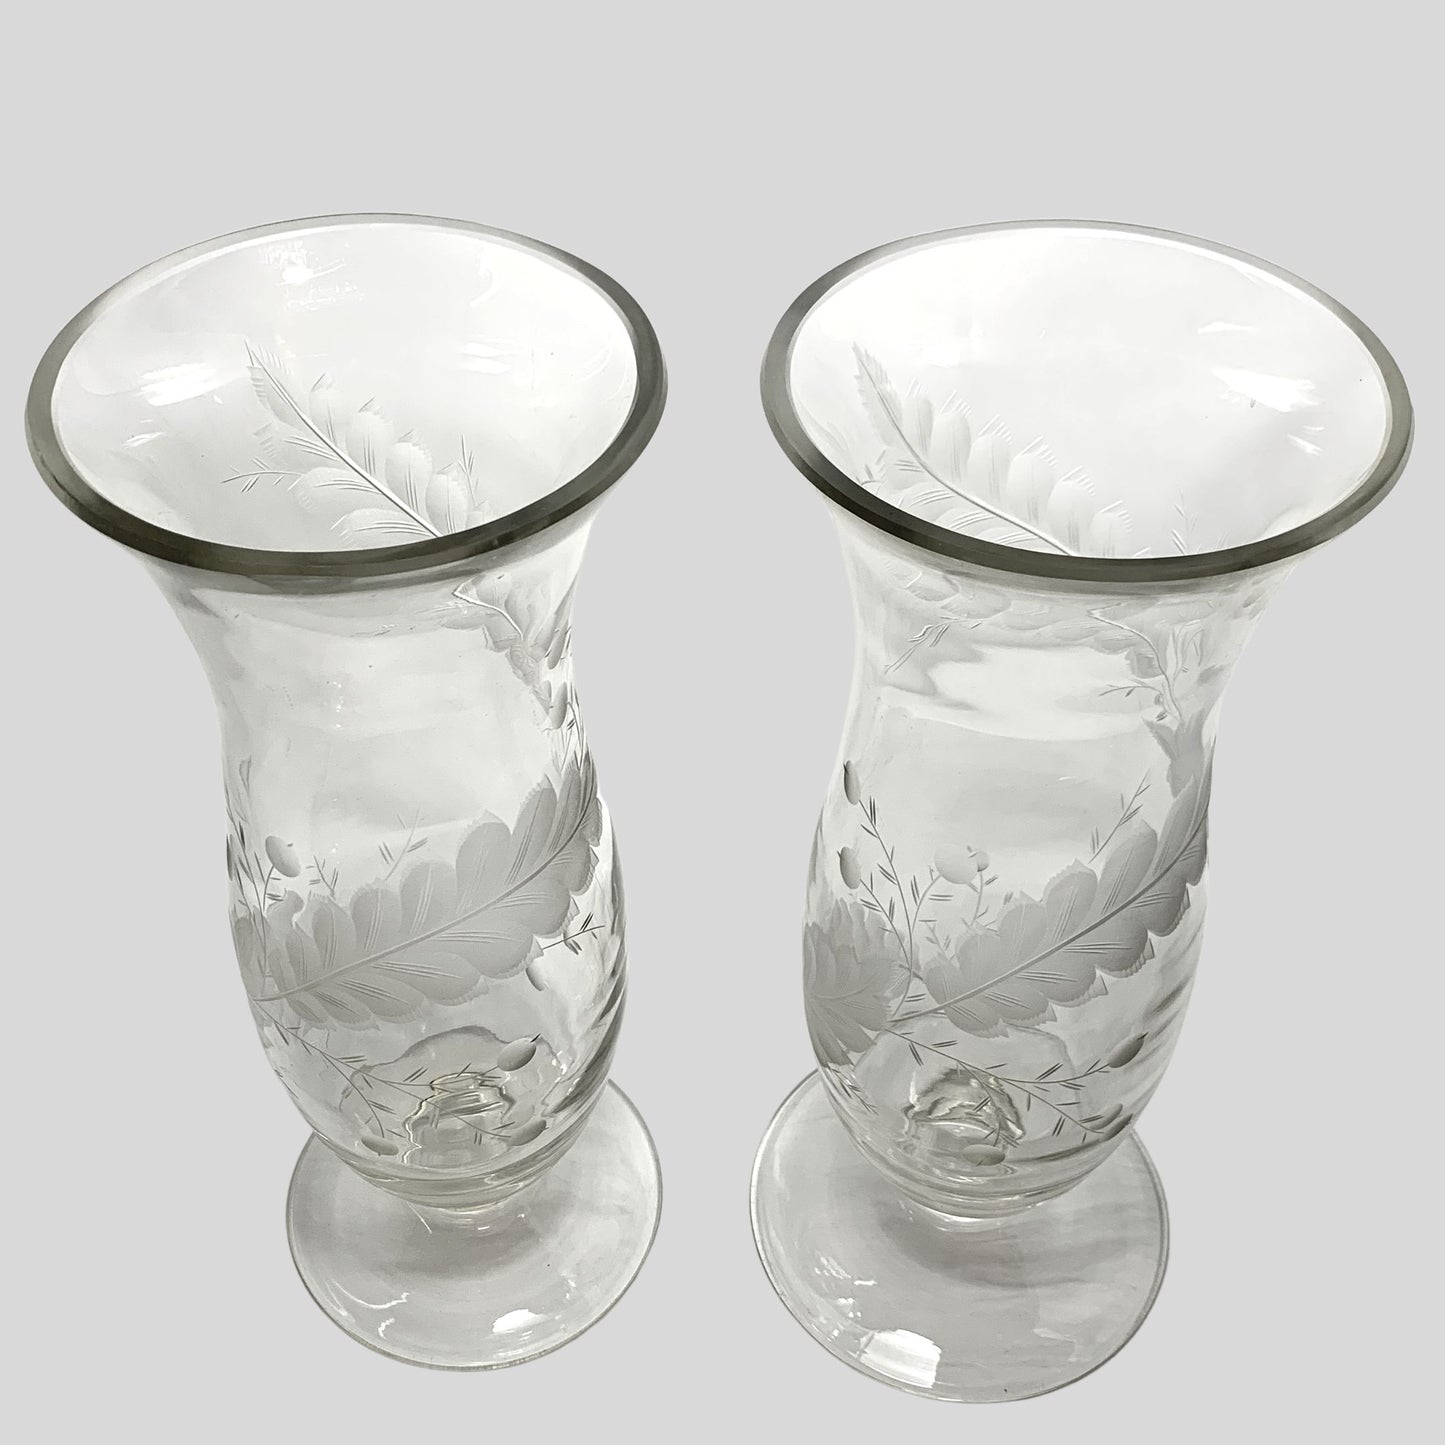 Pair of Vintage 13" Etched Crystal Hurricane Vases (2)